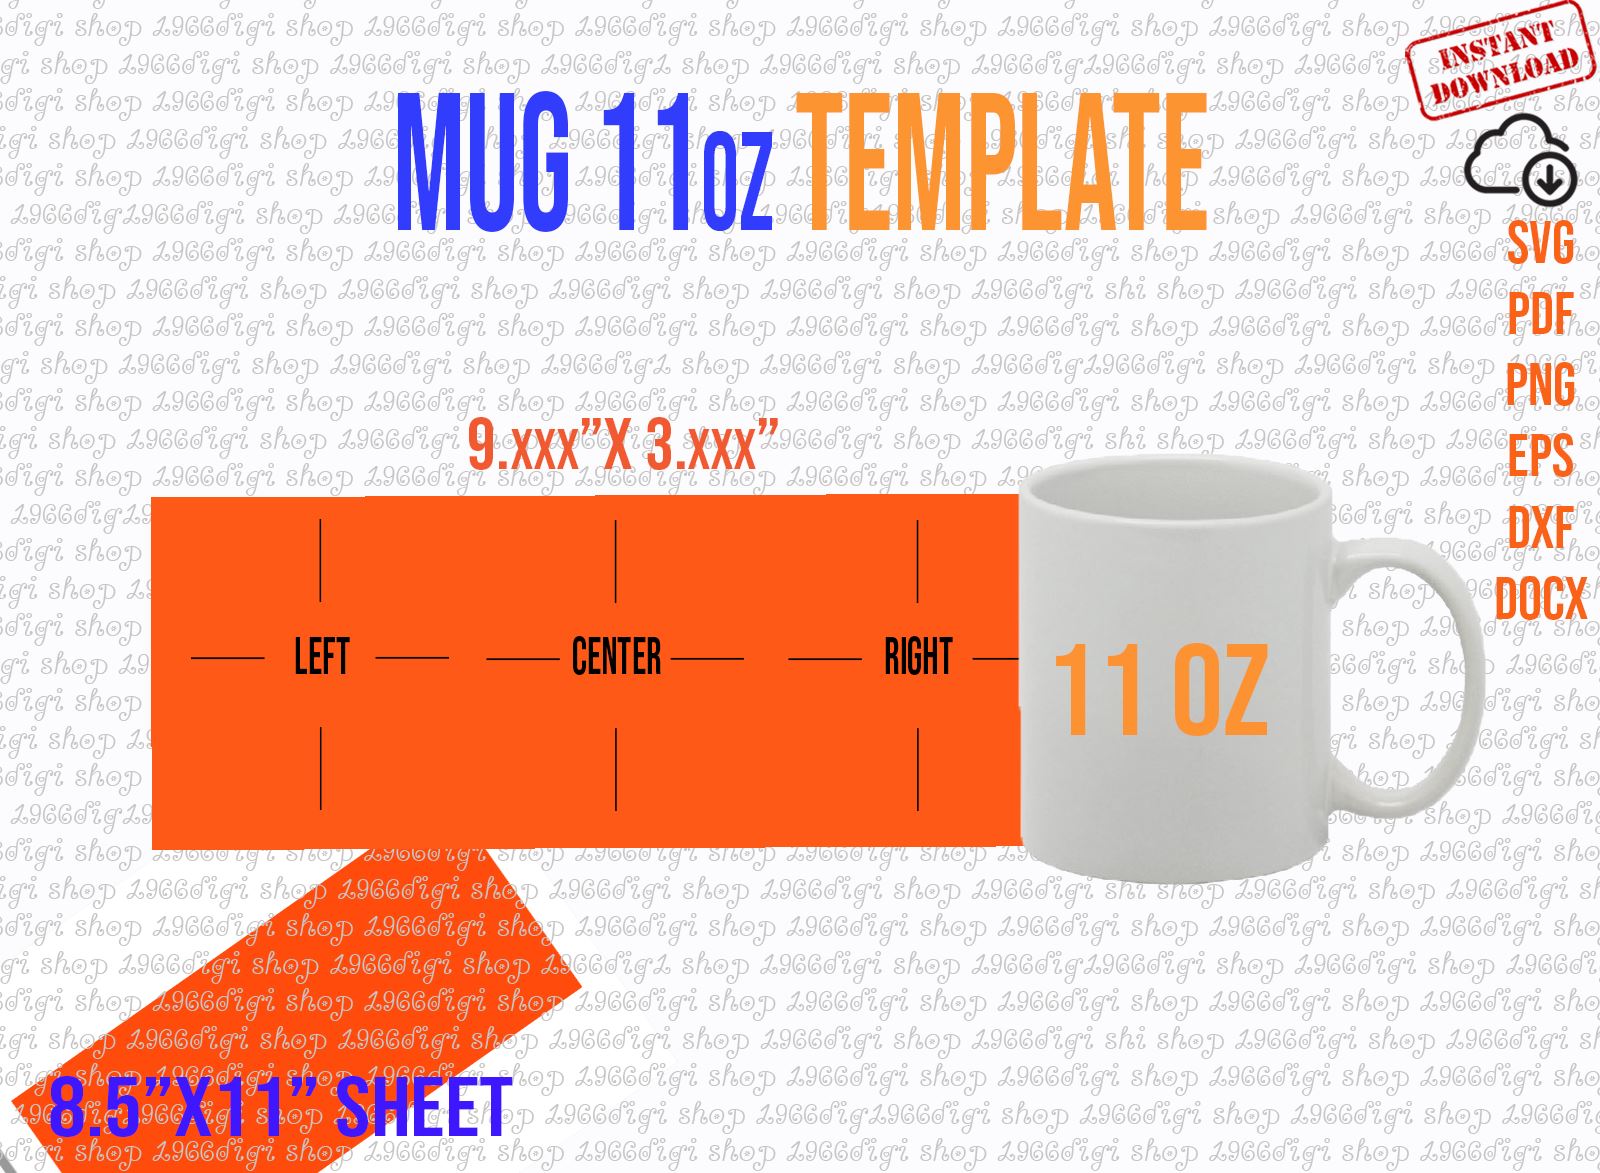 11 oz Morph Mug Sublimation Blank